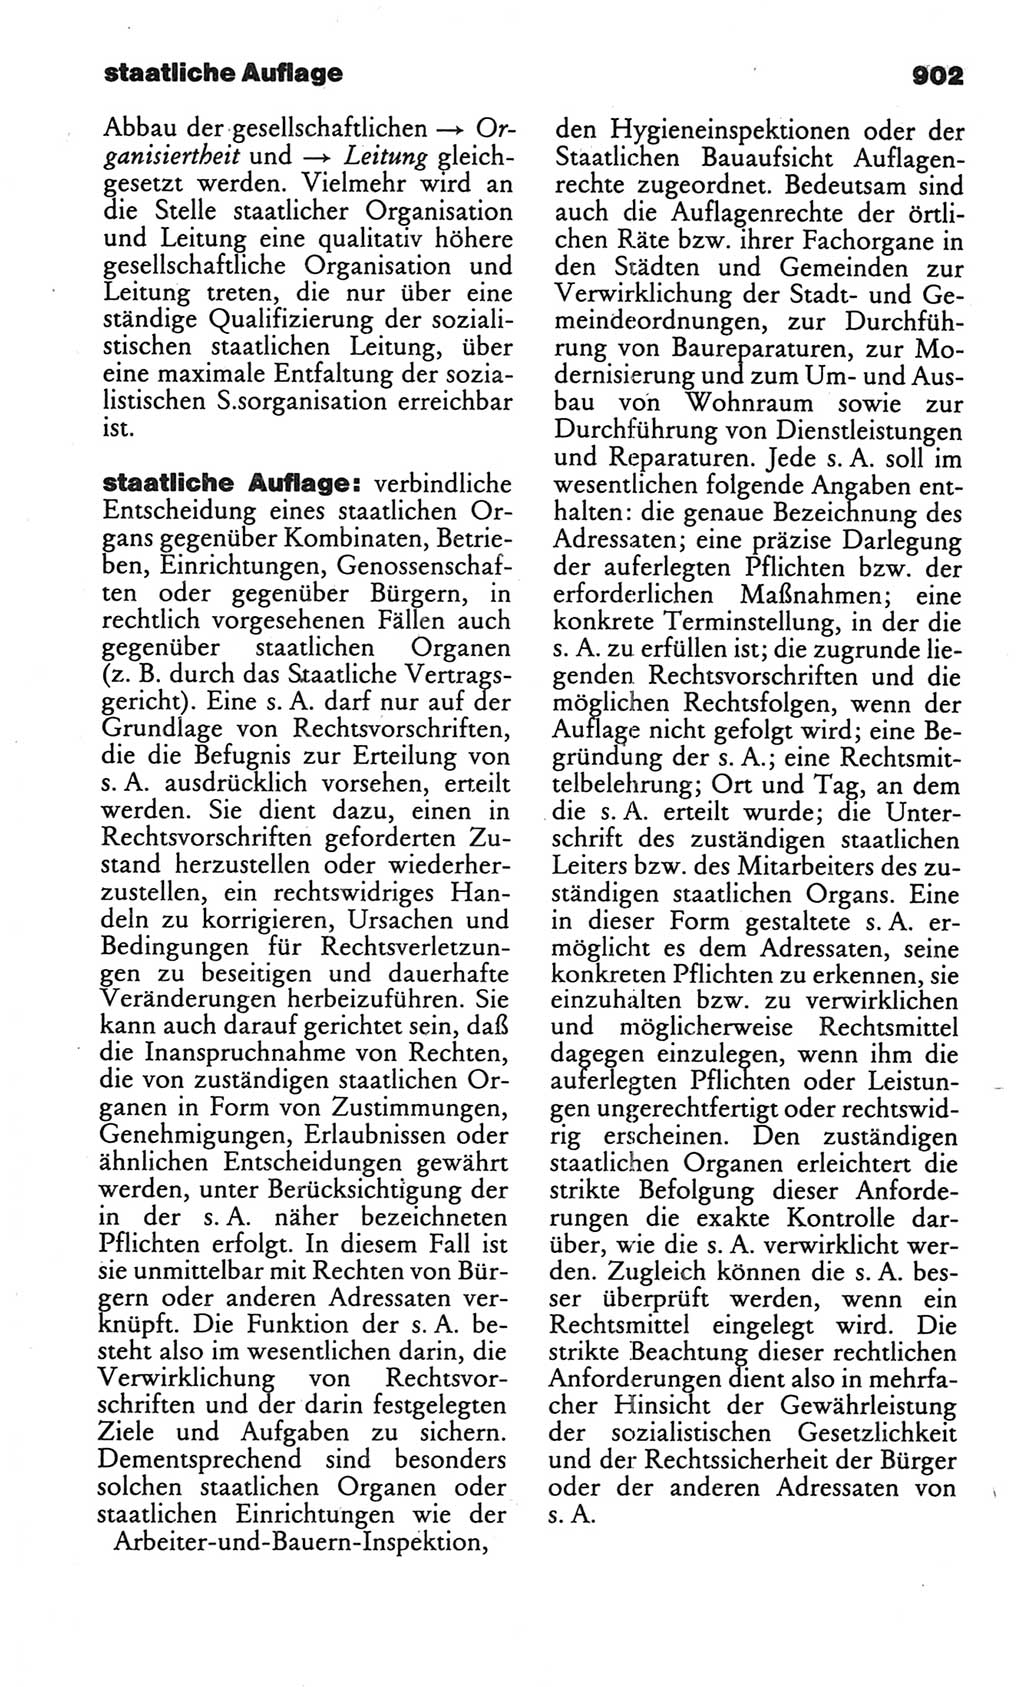 Kleines politisches Wörterbuch [Deutsche Demokratische Republik (DDR)] 1986, Seite 902 (Kl. pol. Wb. DDR 1986, S. 902)